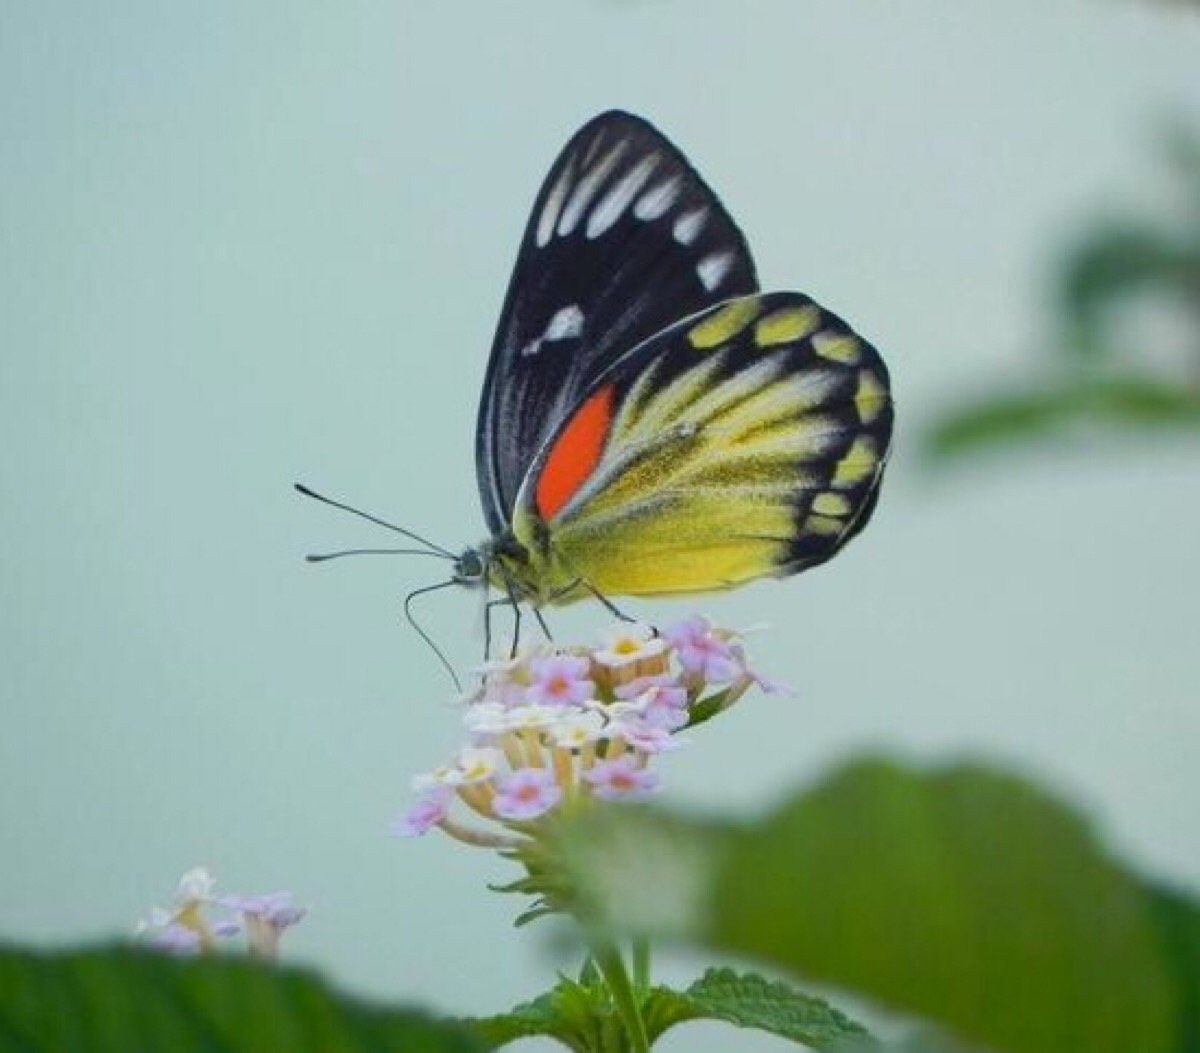 红肩粉蝶的颜色极为鲜艳,在粉蝶世界中,甚为少见,目前仅在云南的南部